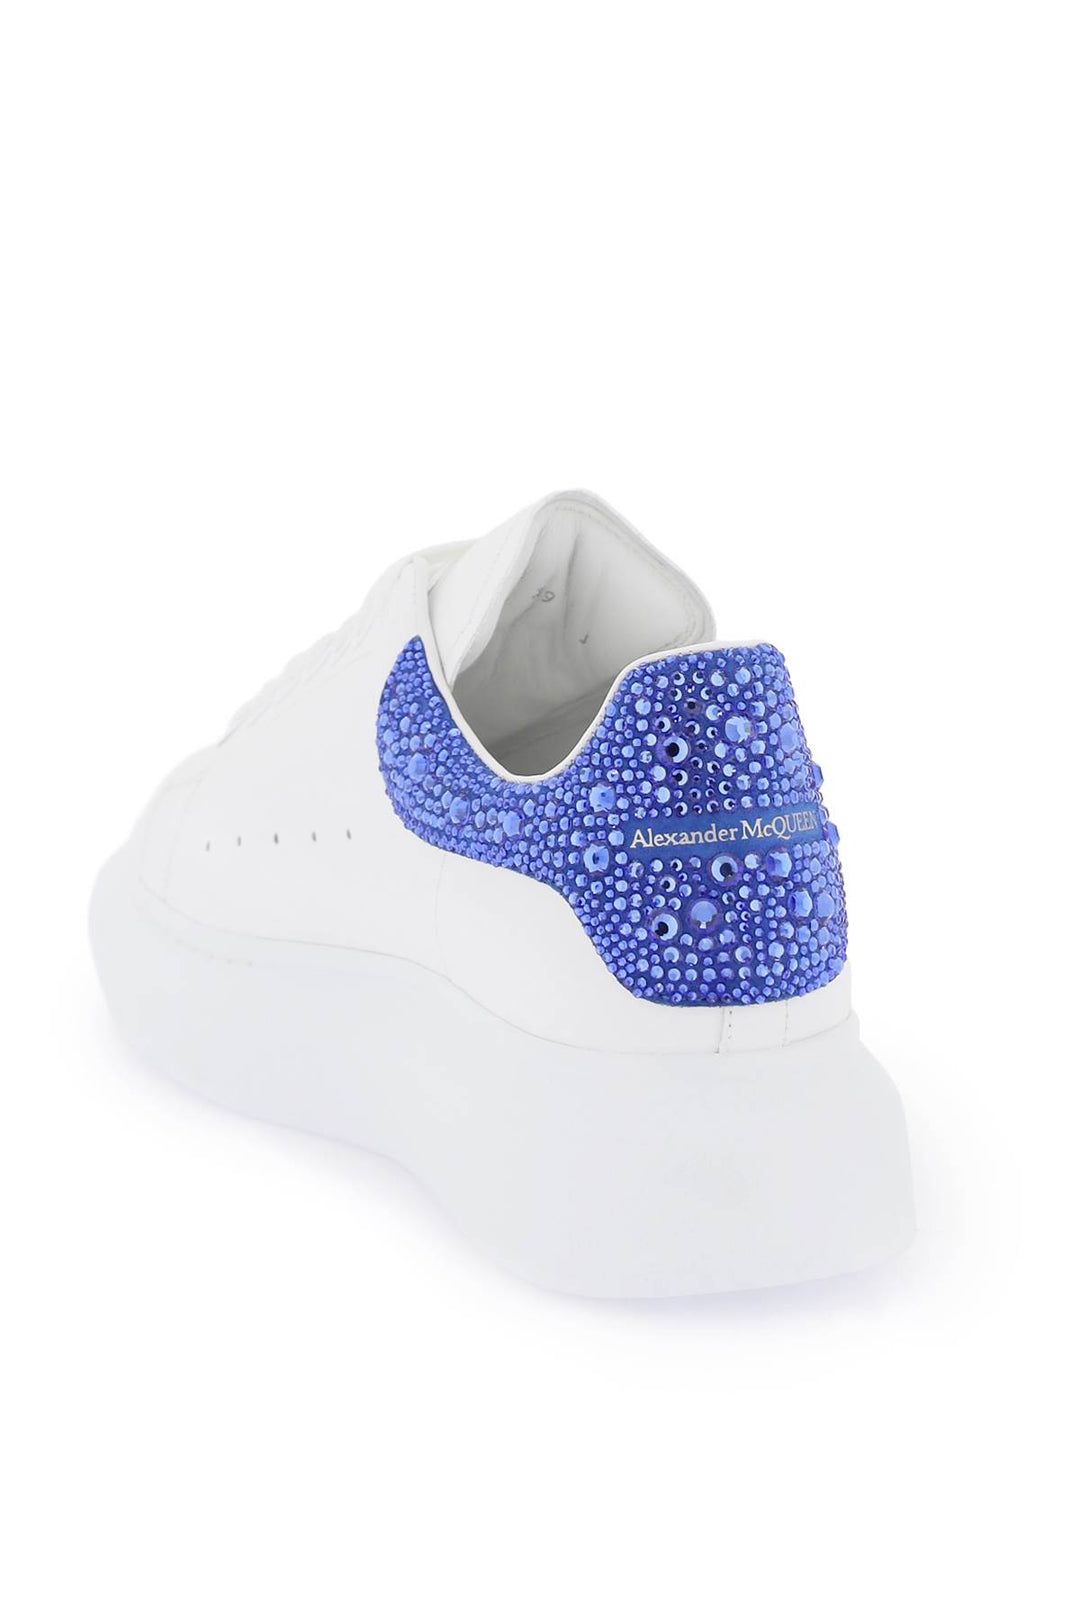 Alexander Mcqueen 'Oversize' Sneakers With Crystals   Bianco